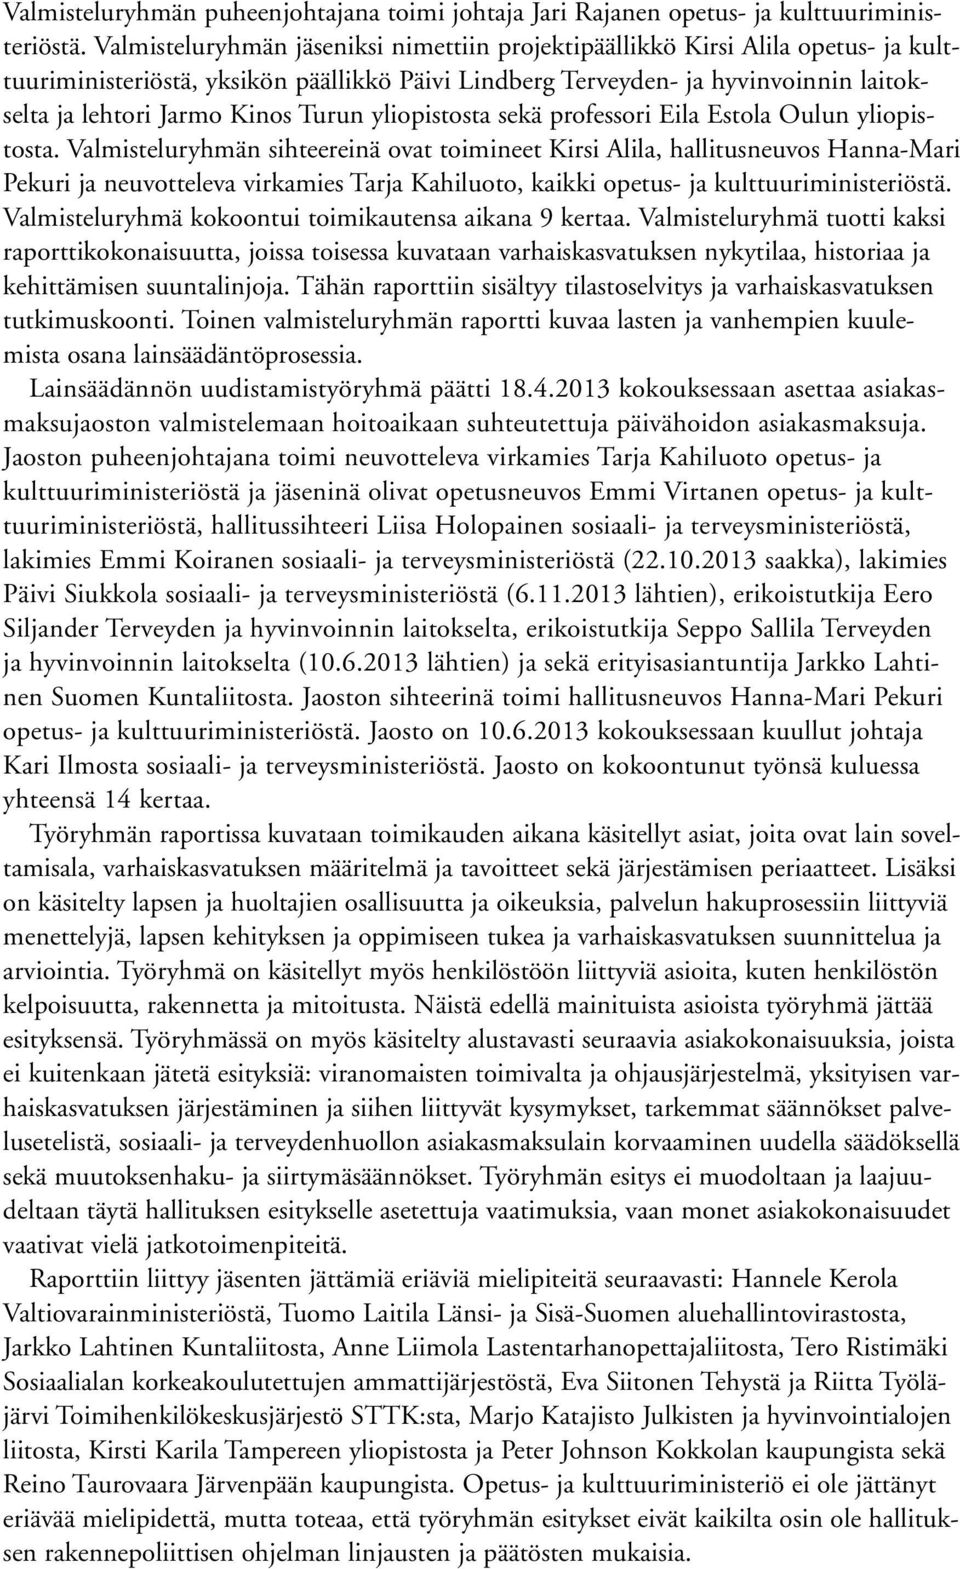 Turun yliopistosta sekä professori Eila Estola Oulun yliopistosta.